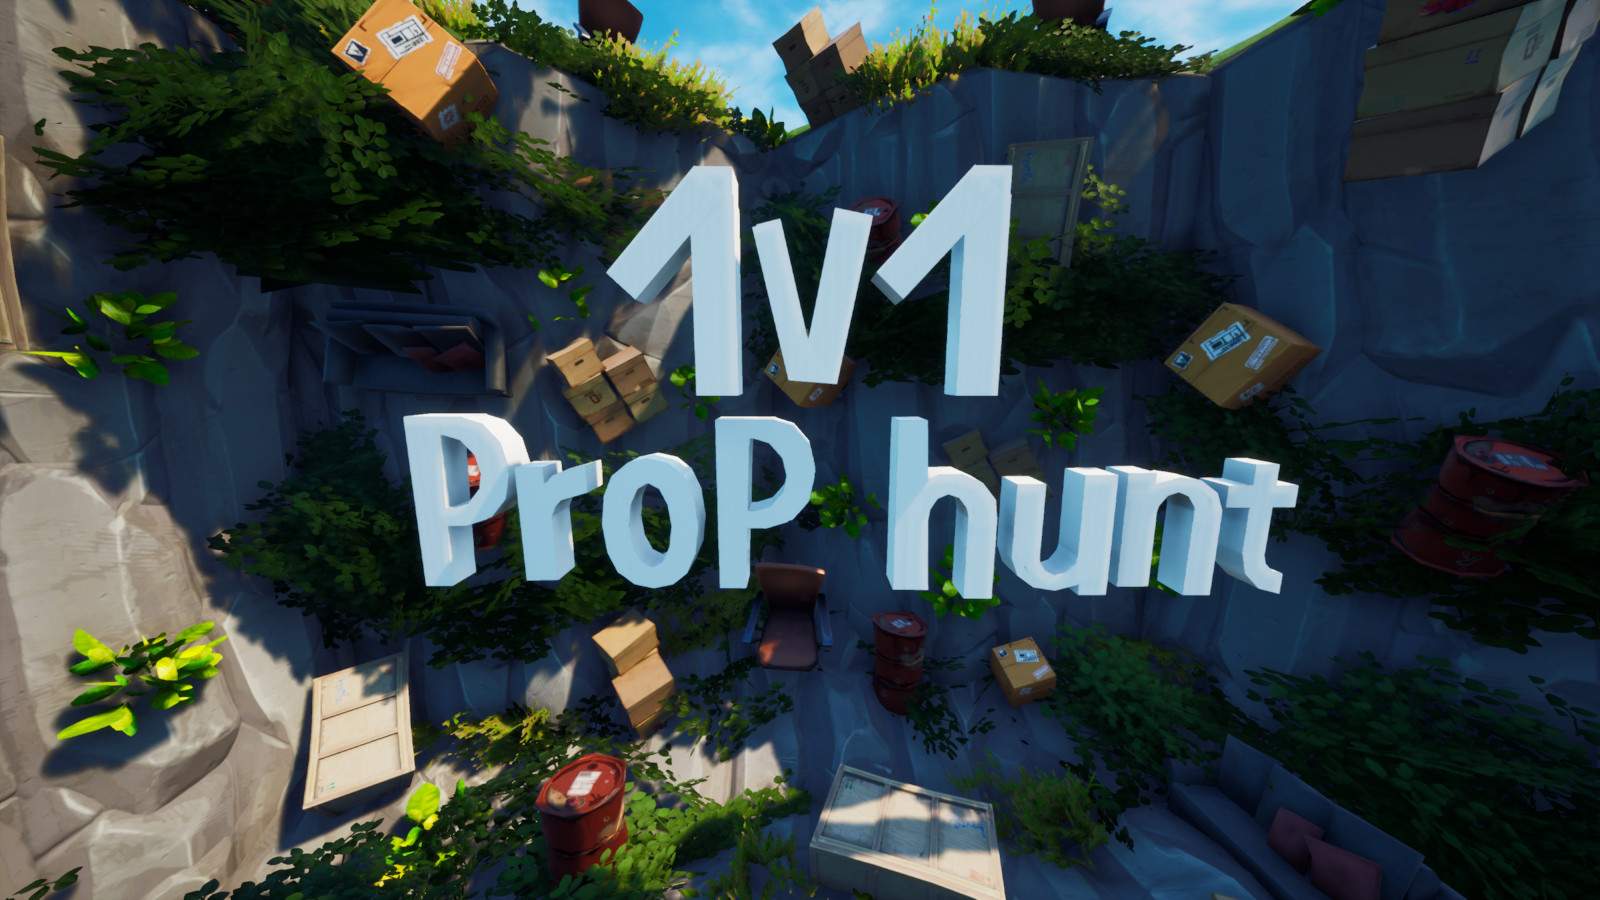 1V1 PROP-HUNT